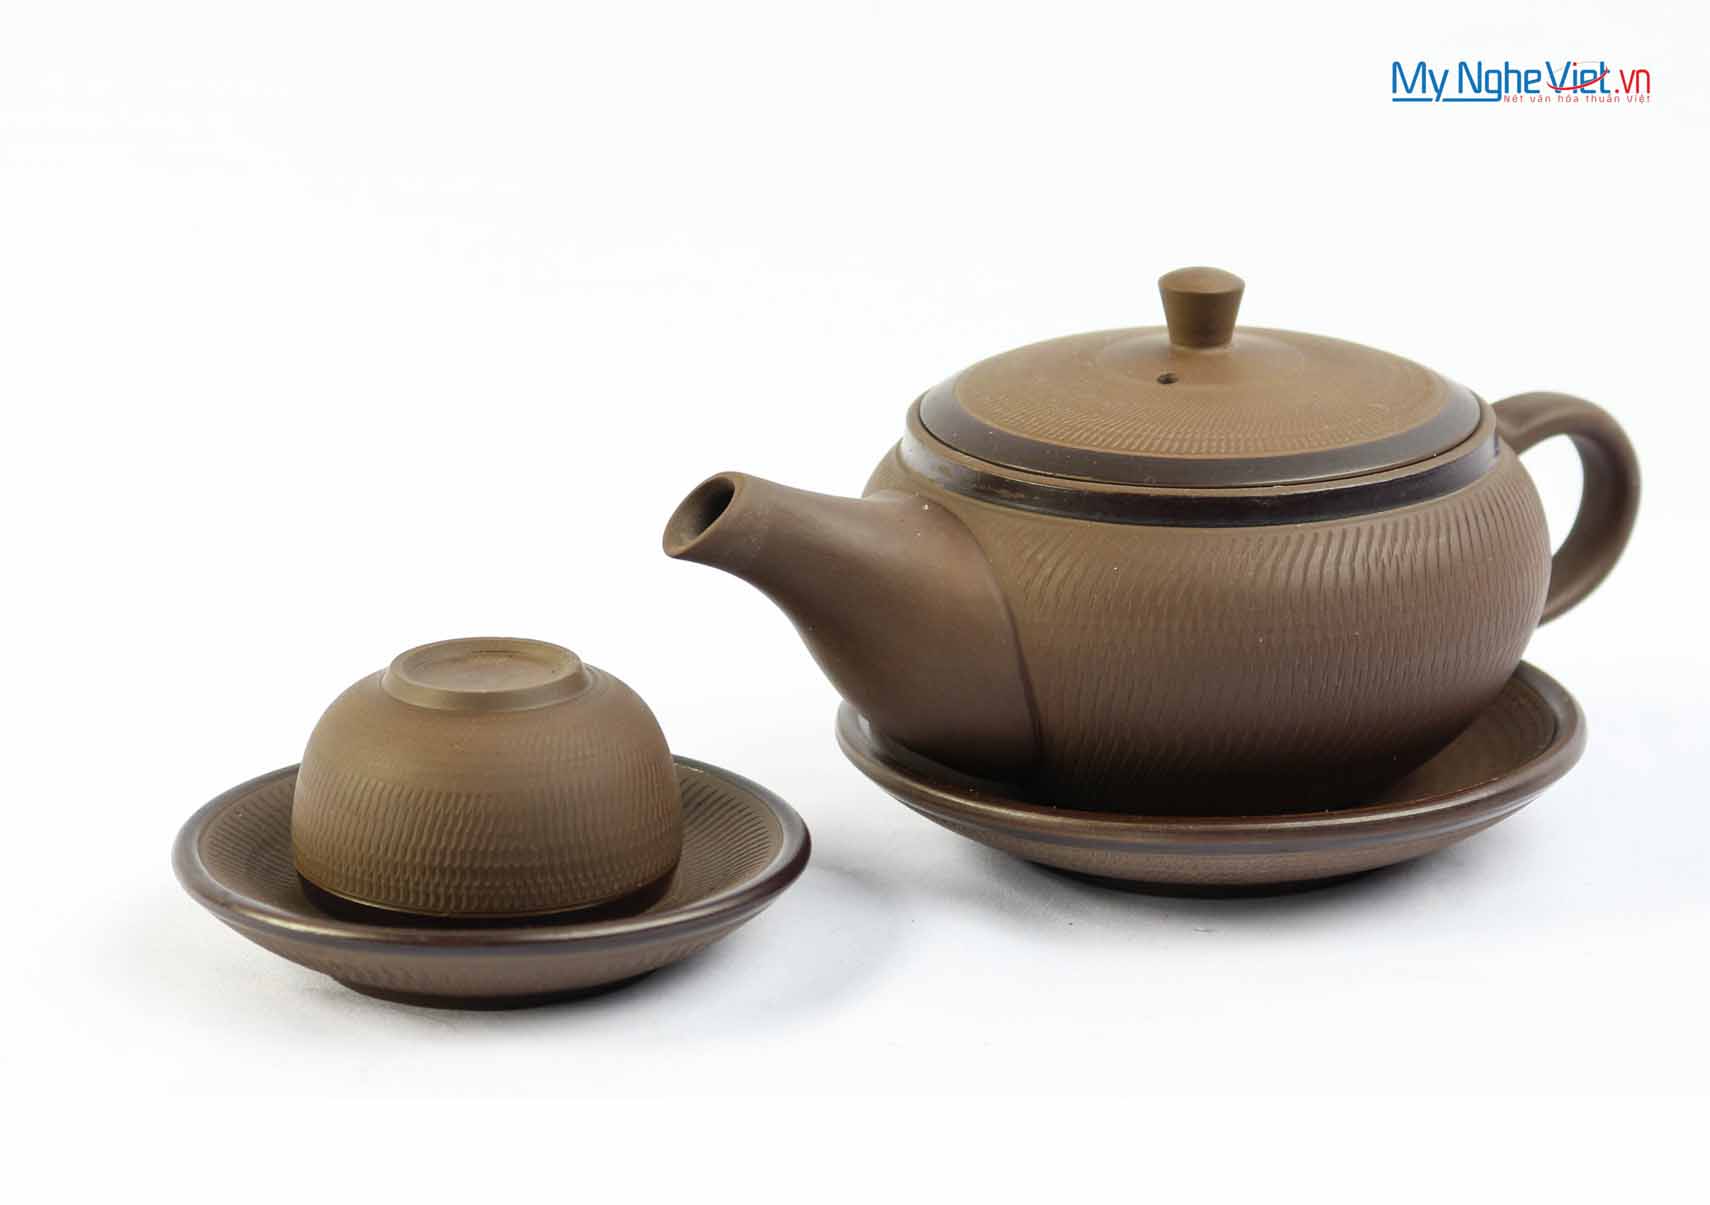 Bộ bình trà Bát Tràng độc ẩm gốm ganh thấp MNV-TS049-2